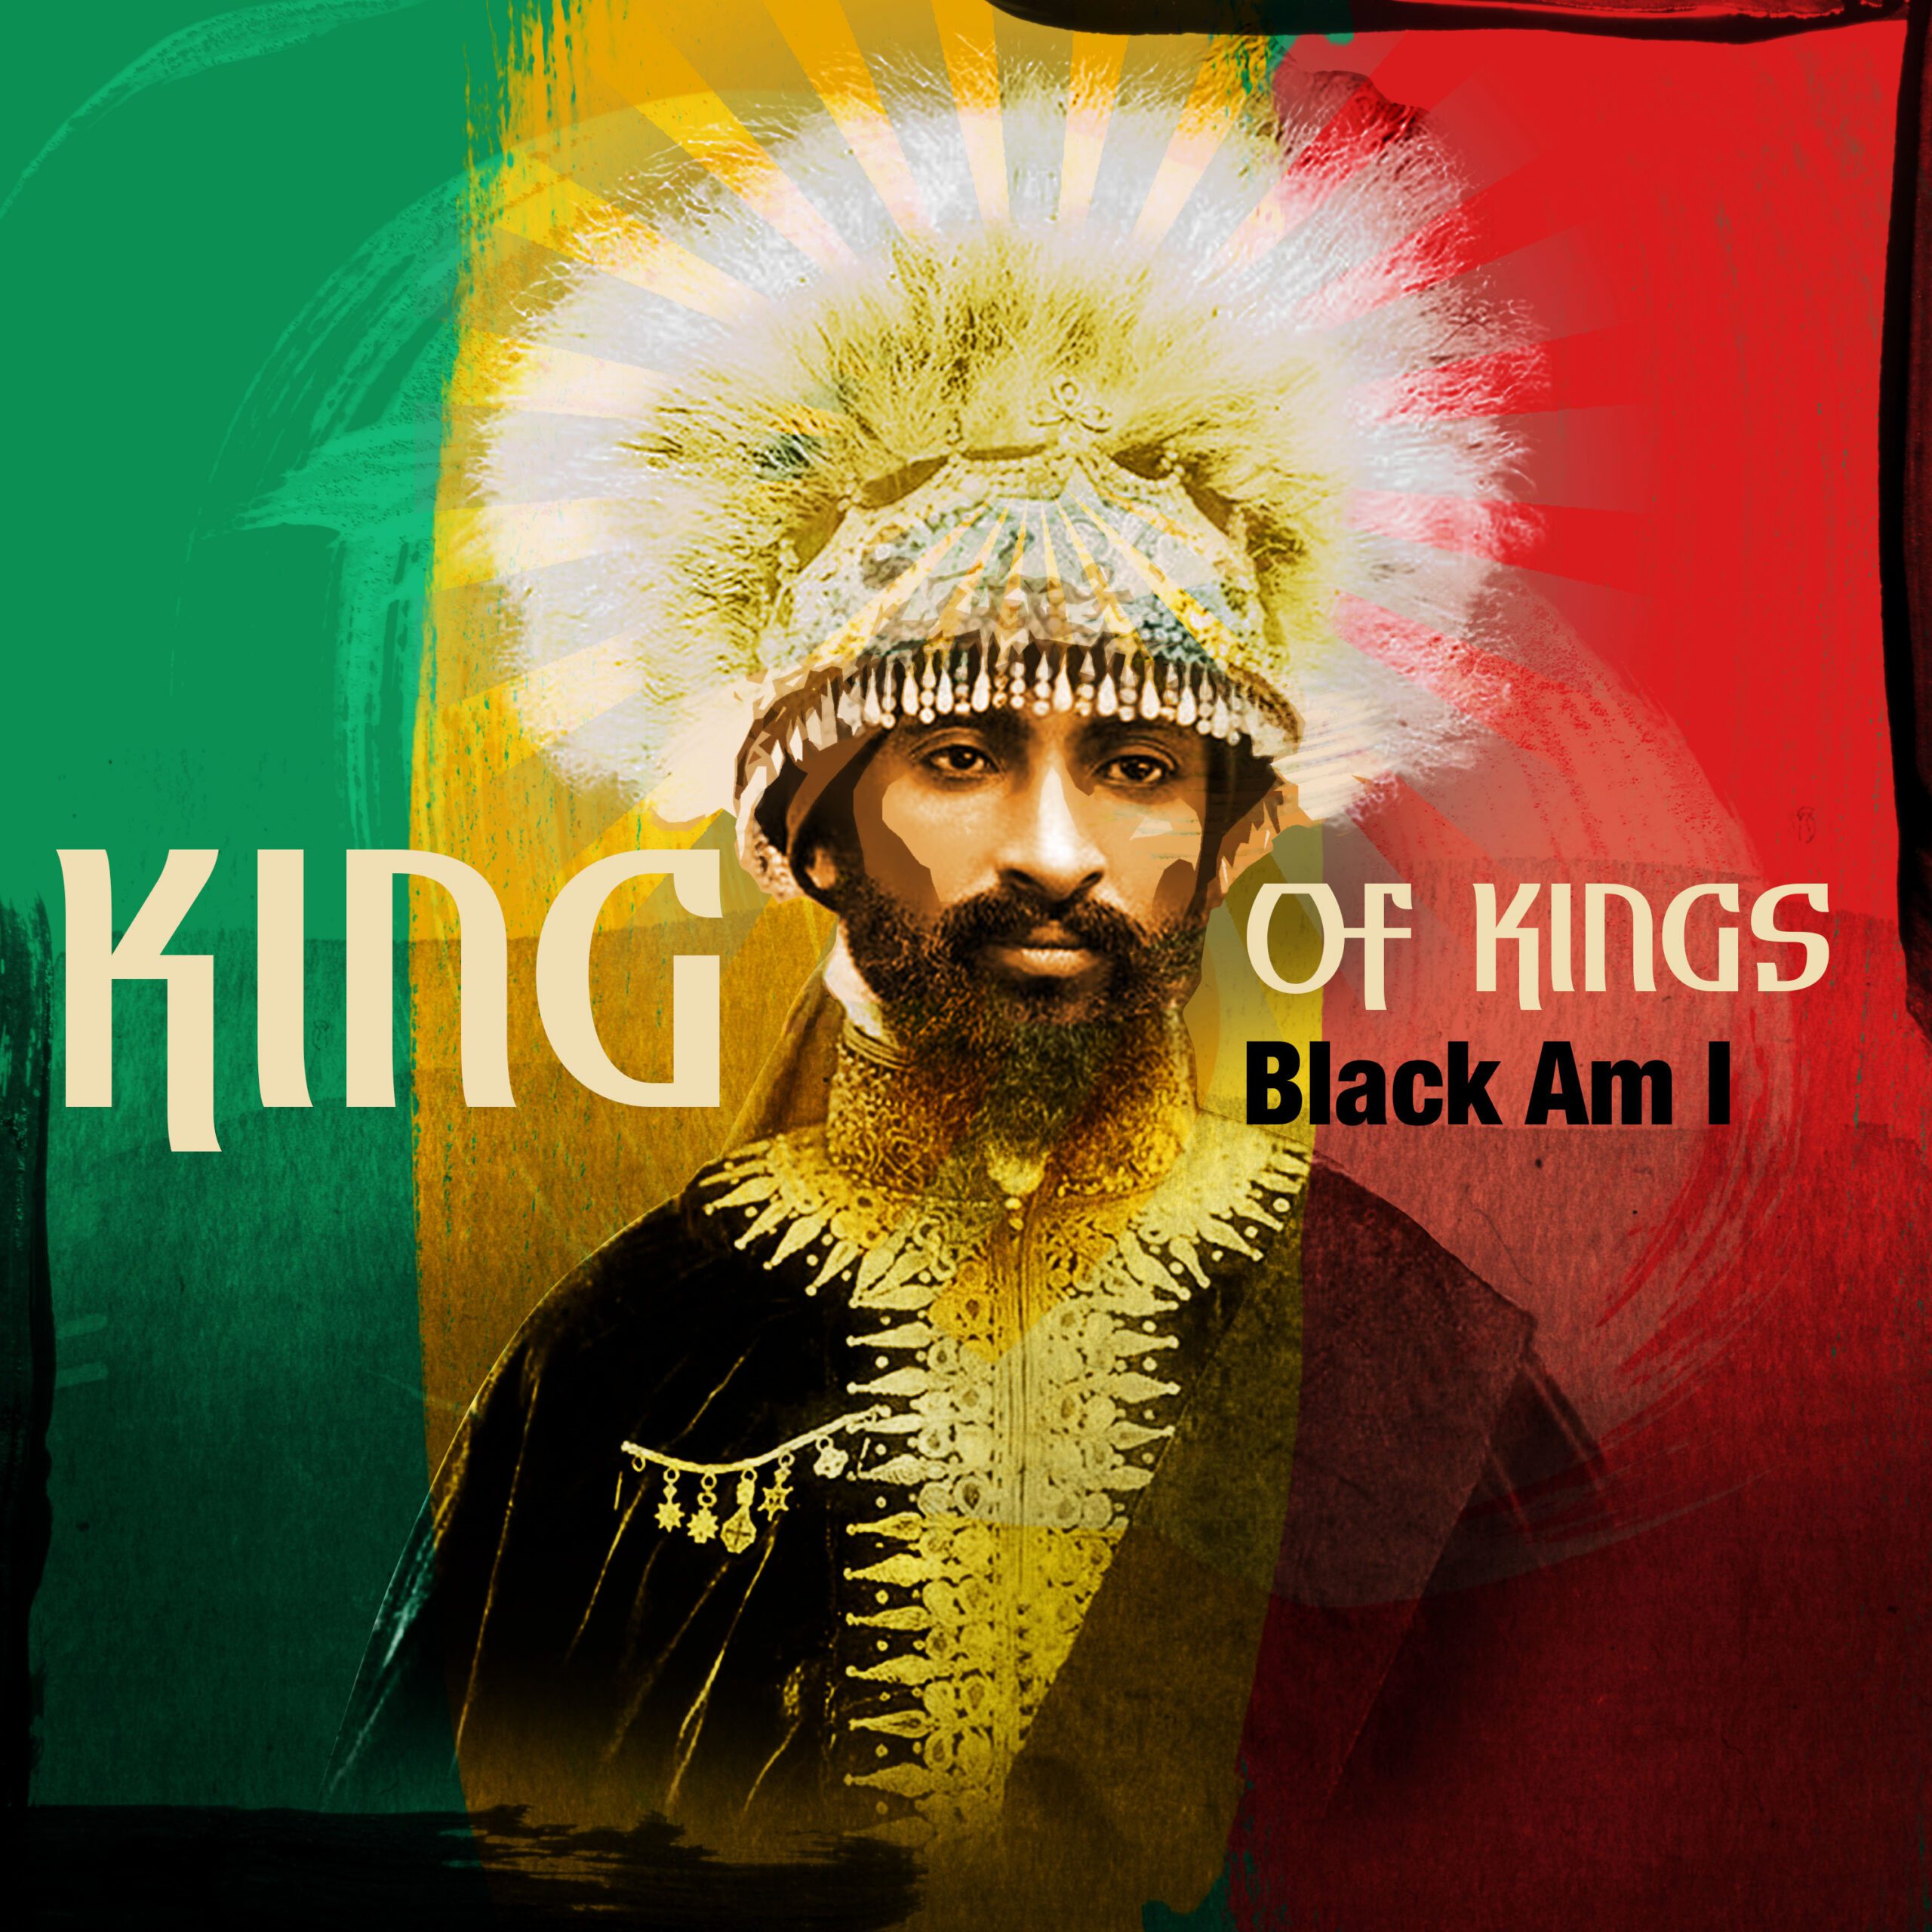 Nova numera: “King of Kings” od Black Am I pod palicom Damian Marley-a